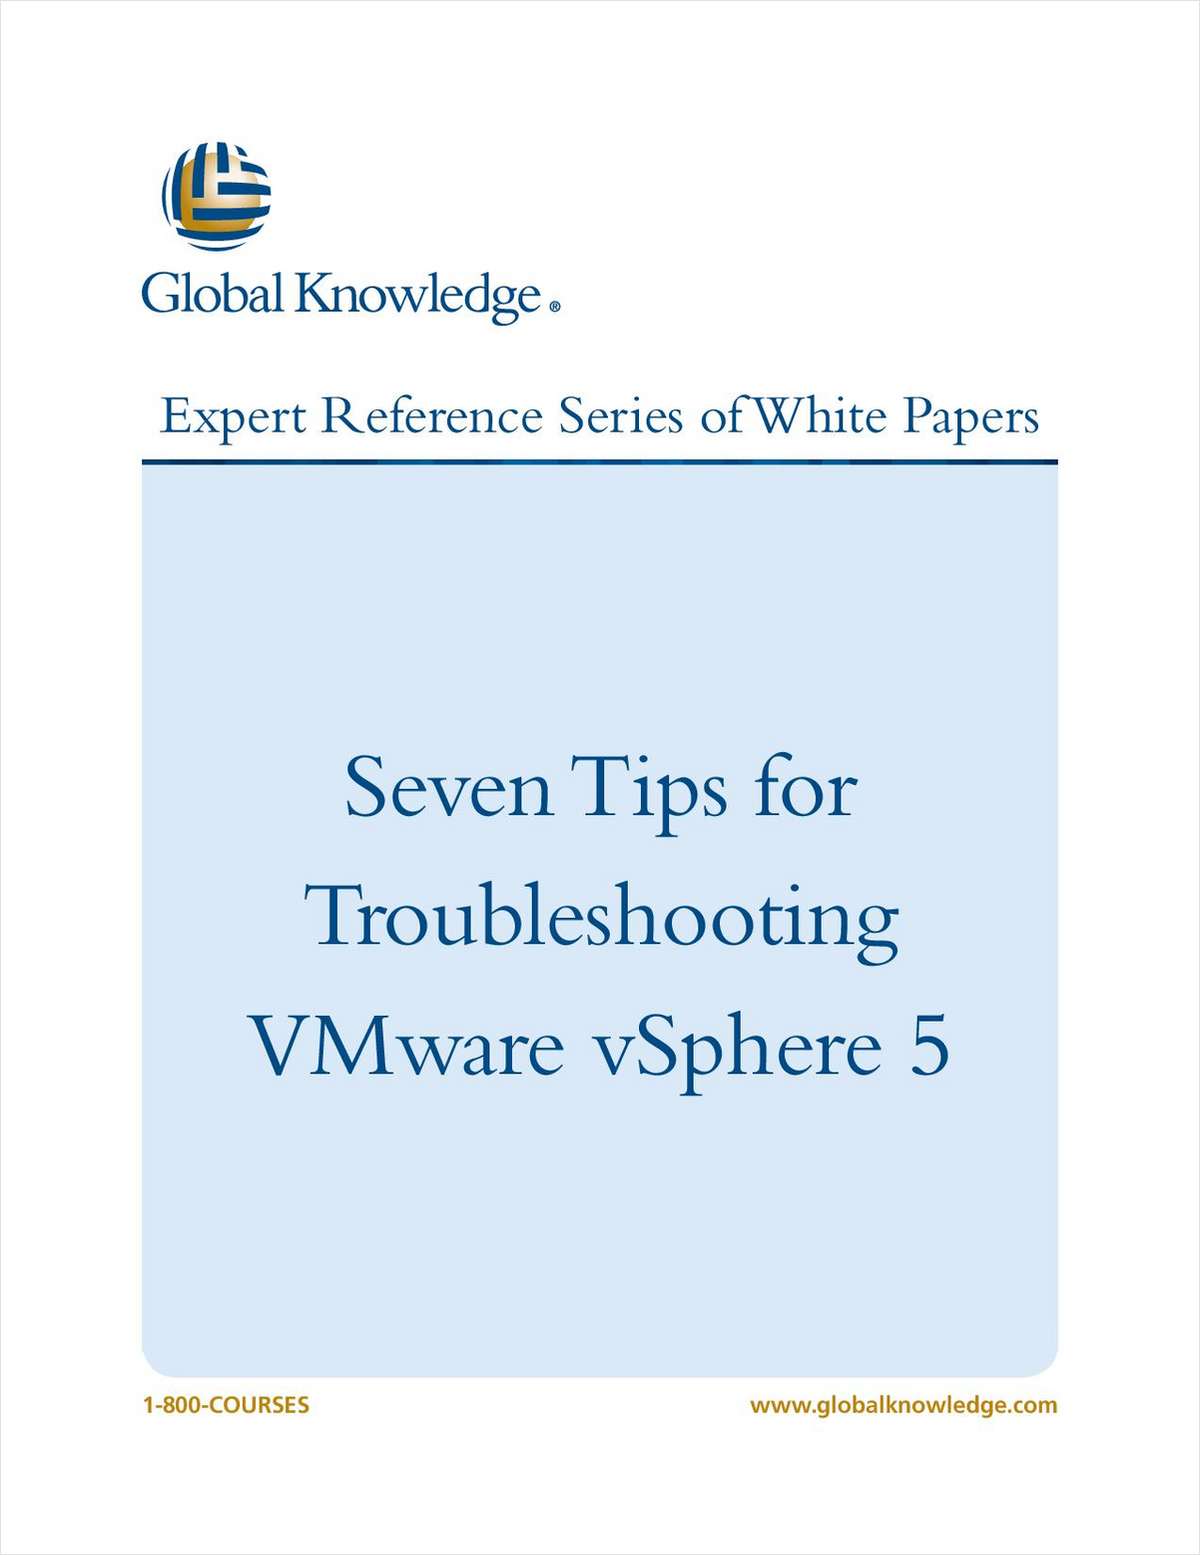 Seven Tips for Troubleshooting VMware vSphere 5